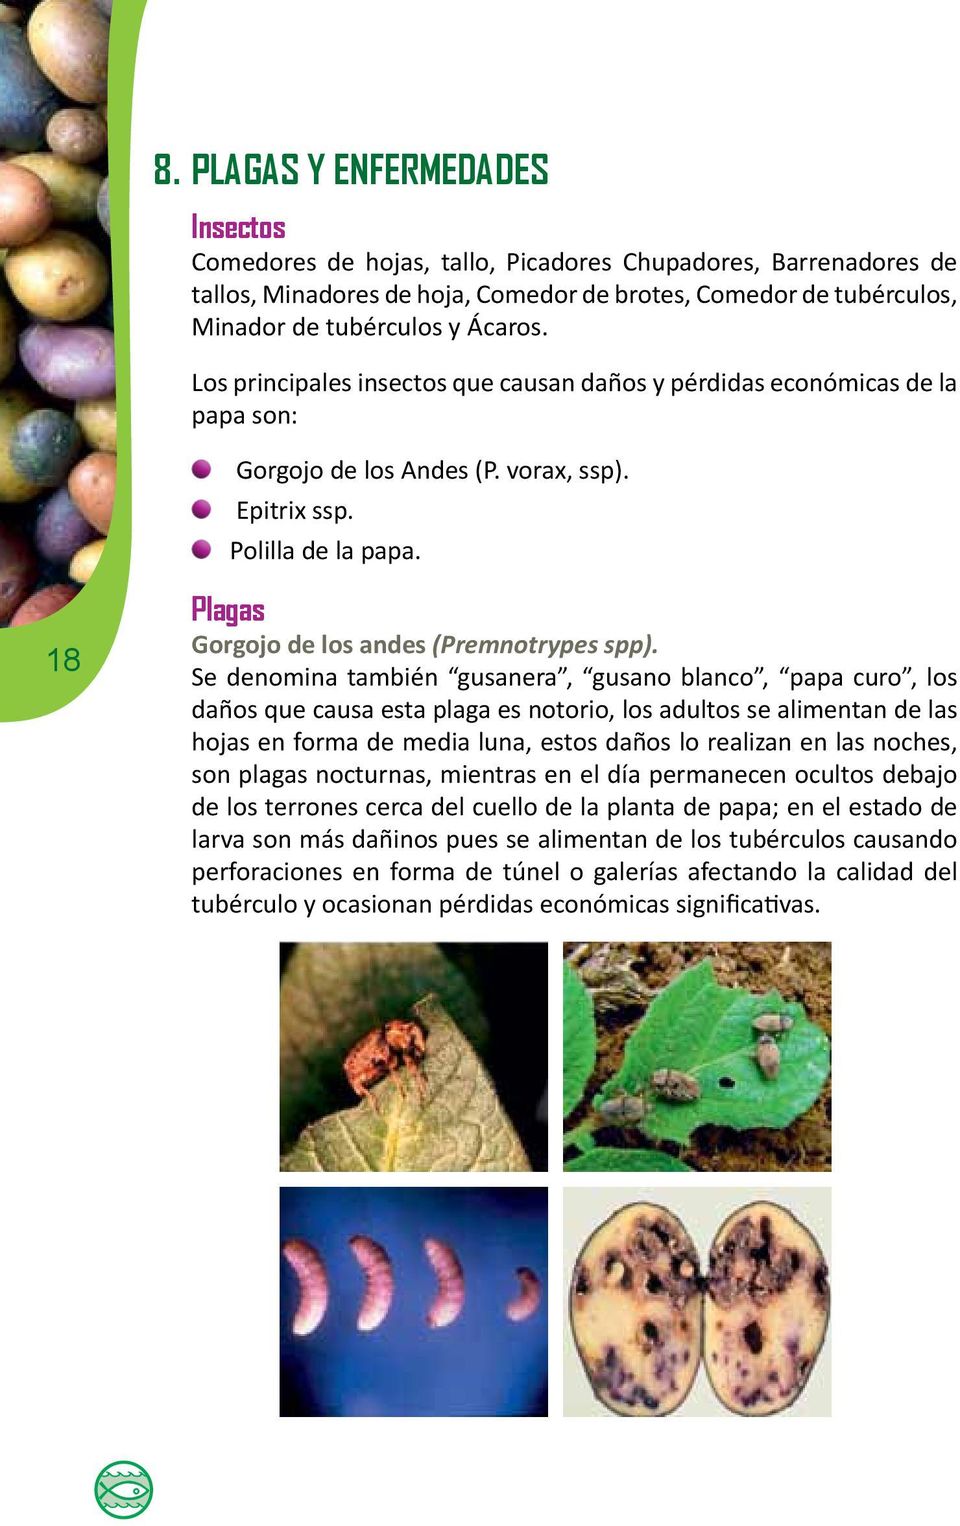 18 Plagas Gorgojo de los andes (Premnotrypes spp).